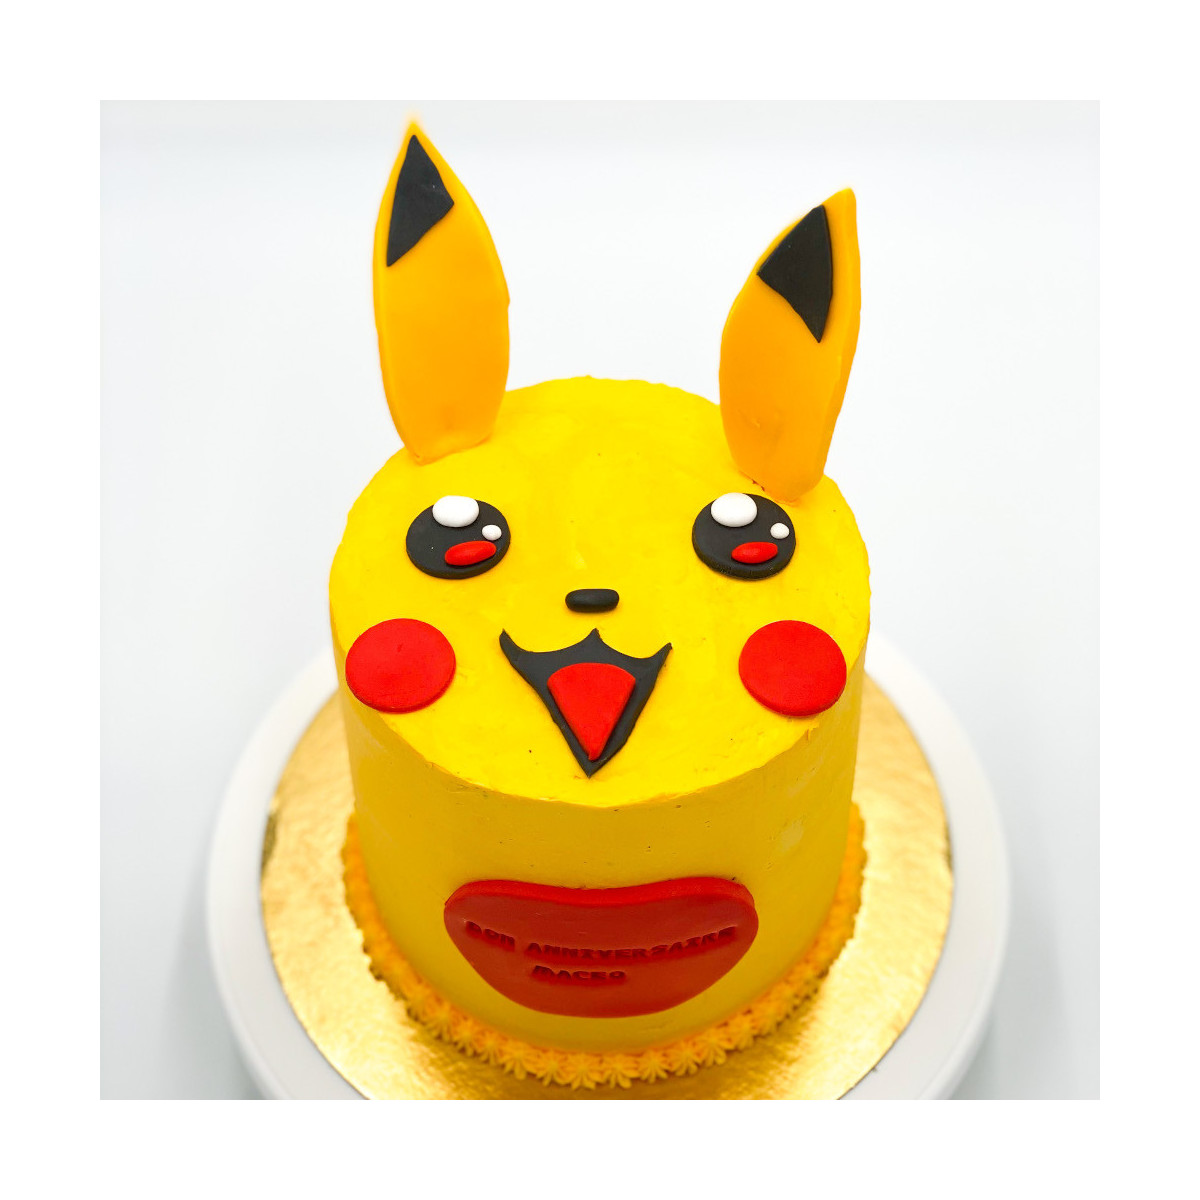 Commander votre gâteau d'anniversaire Pokémon en ligne